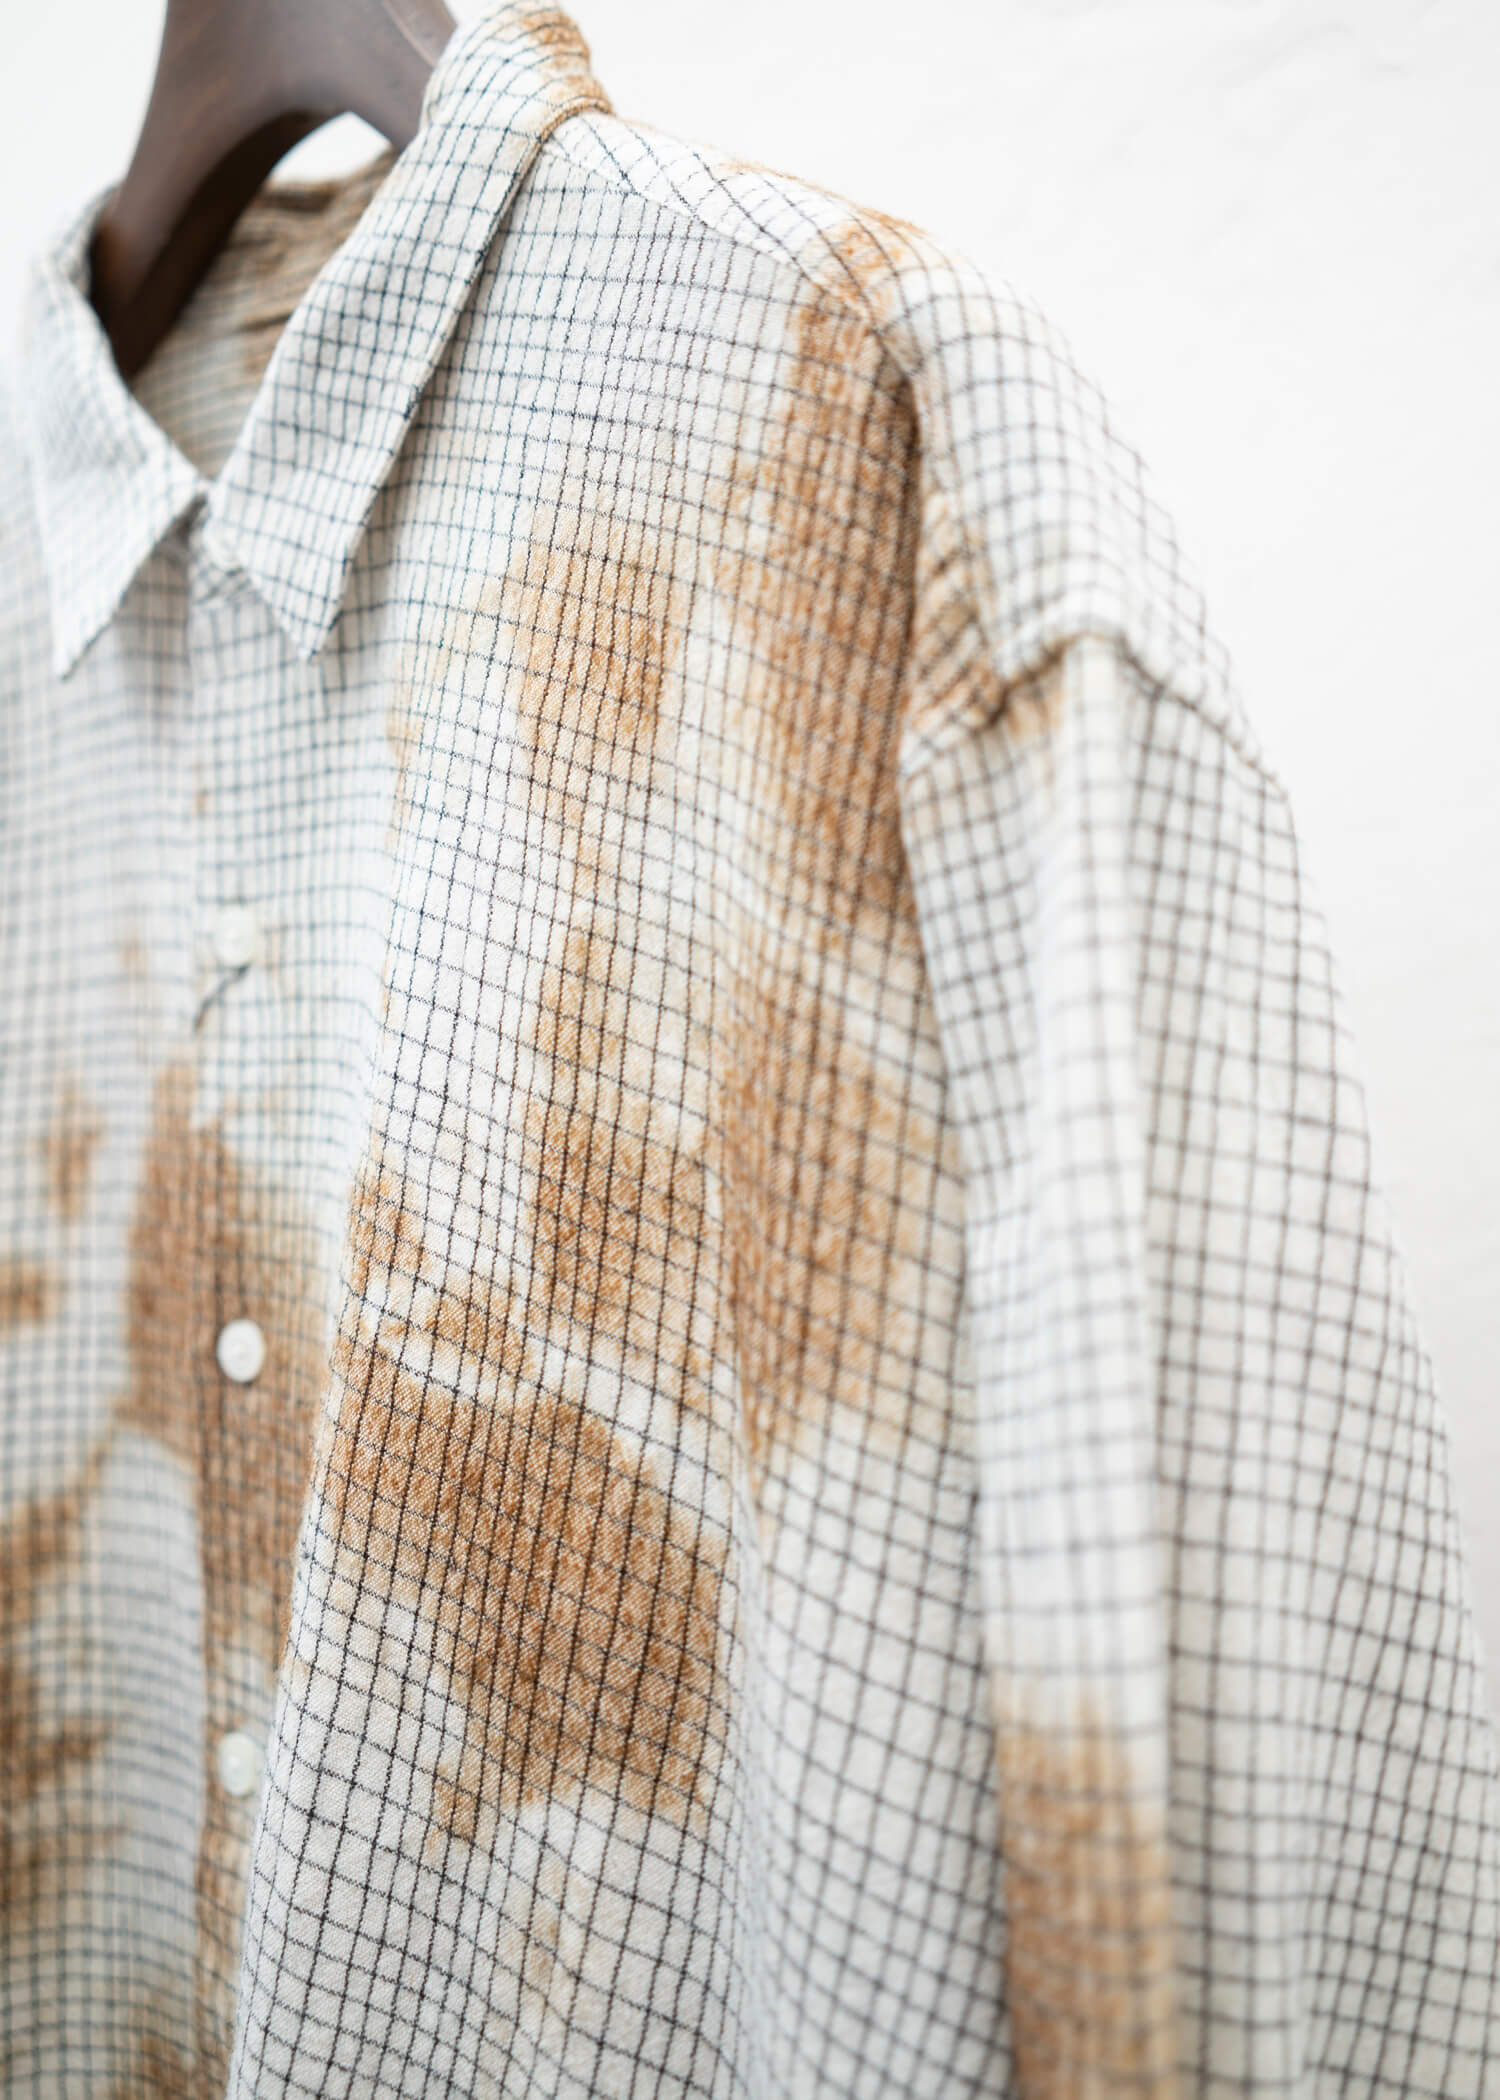 SUZUSAN Wool Cotton Linen Pencil Check Shirt(Madara Shibori) Brown - Natural White,